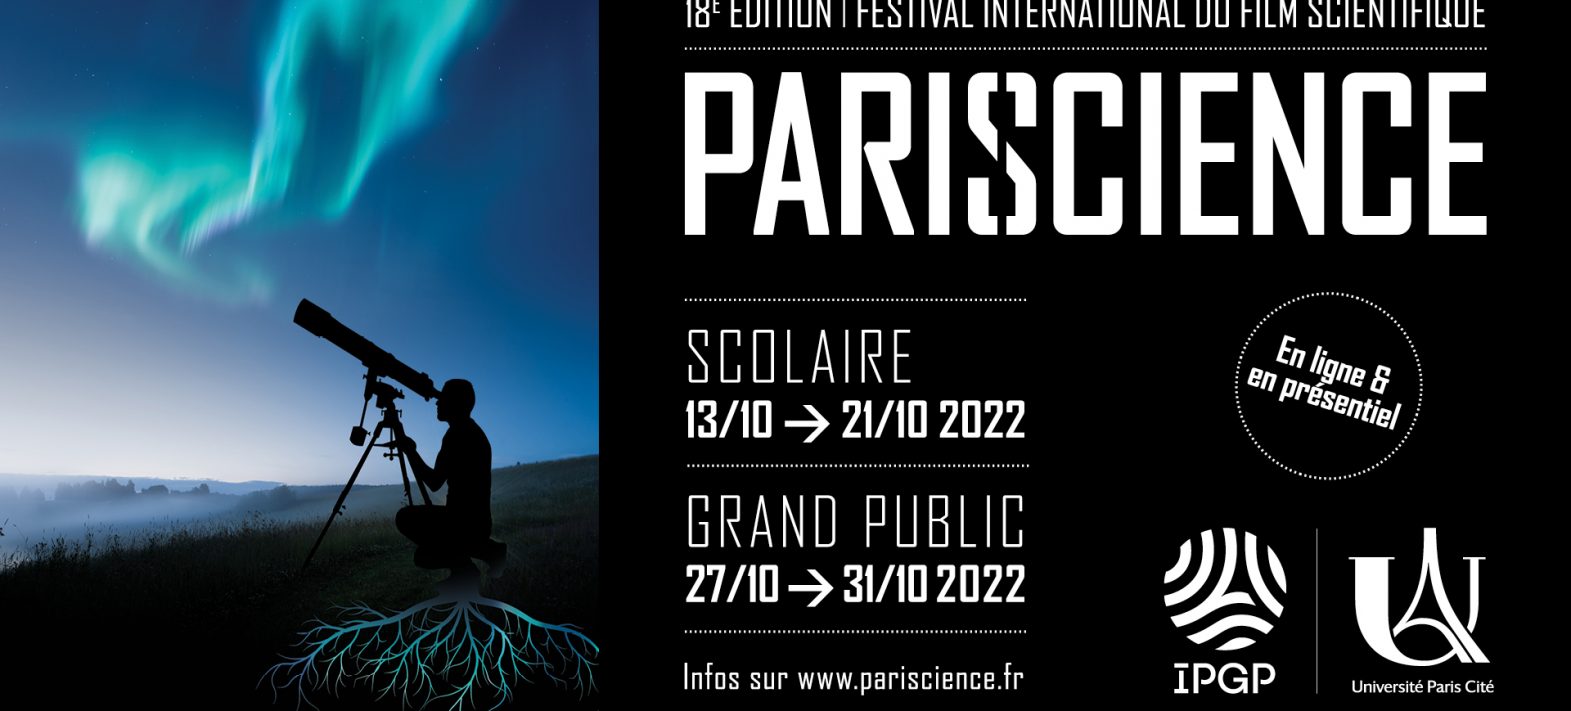 L’IPGP accueille le Festival Pariscience